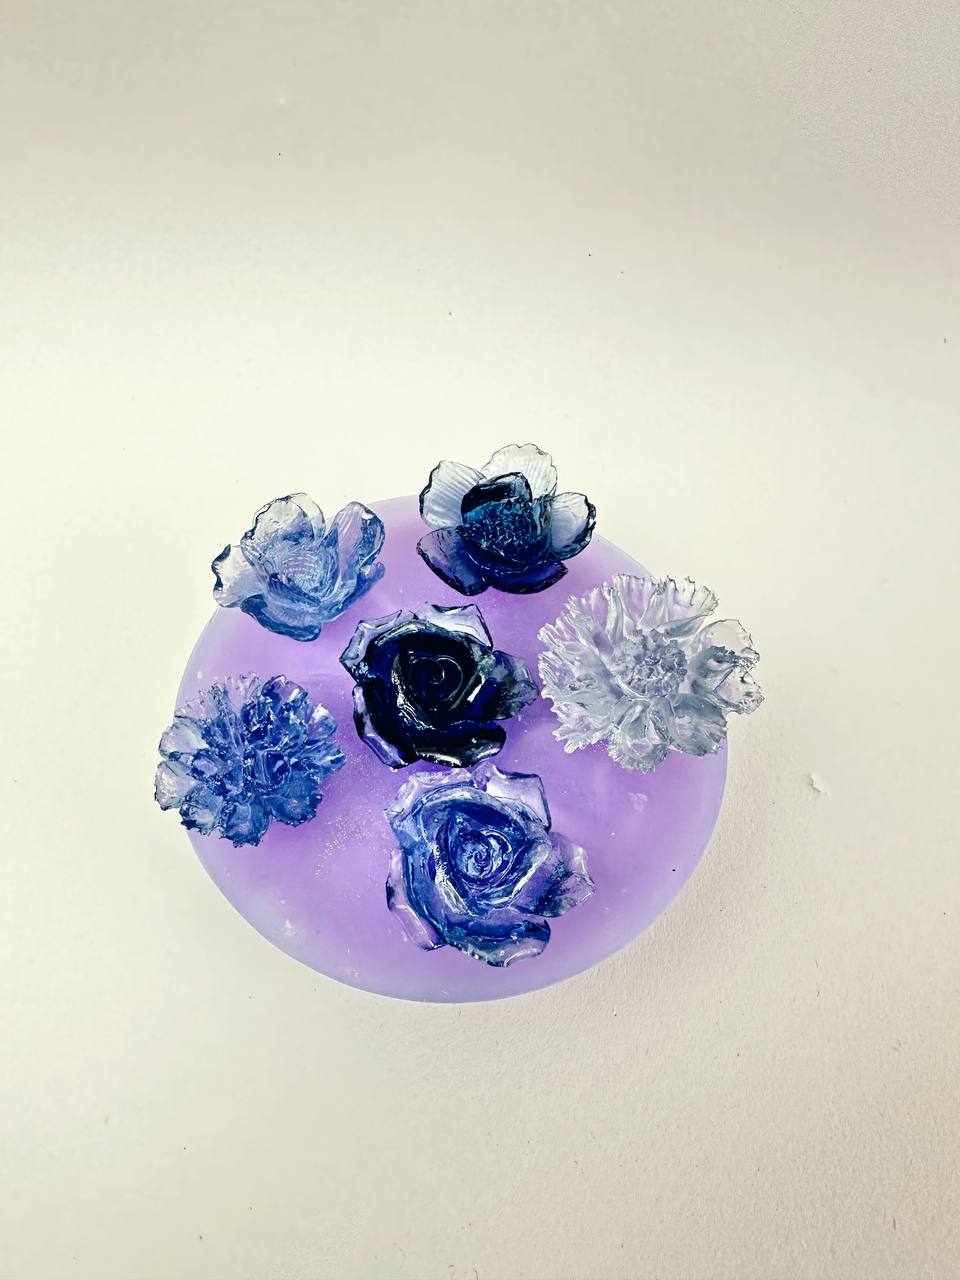 Zierliche 3D-Blumen-Silikonharz-Formen – 6 kleine Blumen-Designs für die Herstellung von Epoxidharz